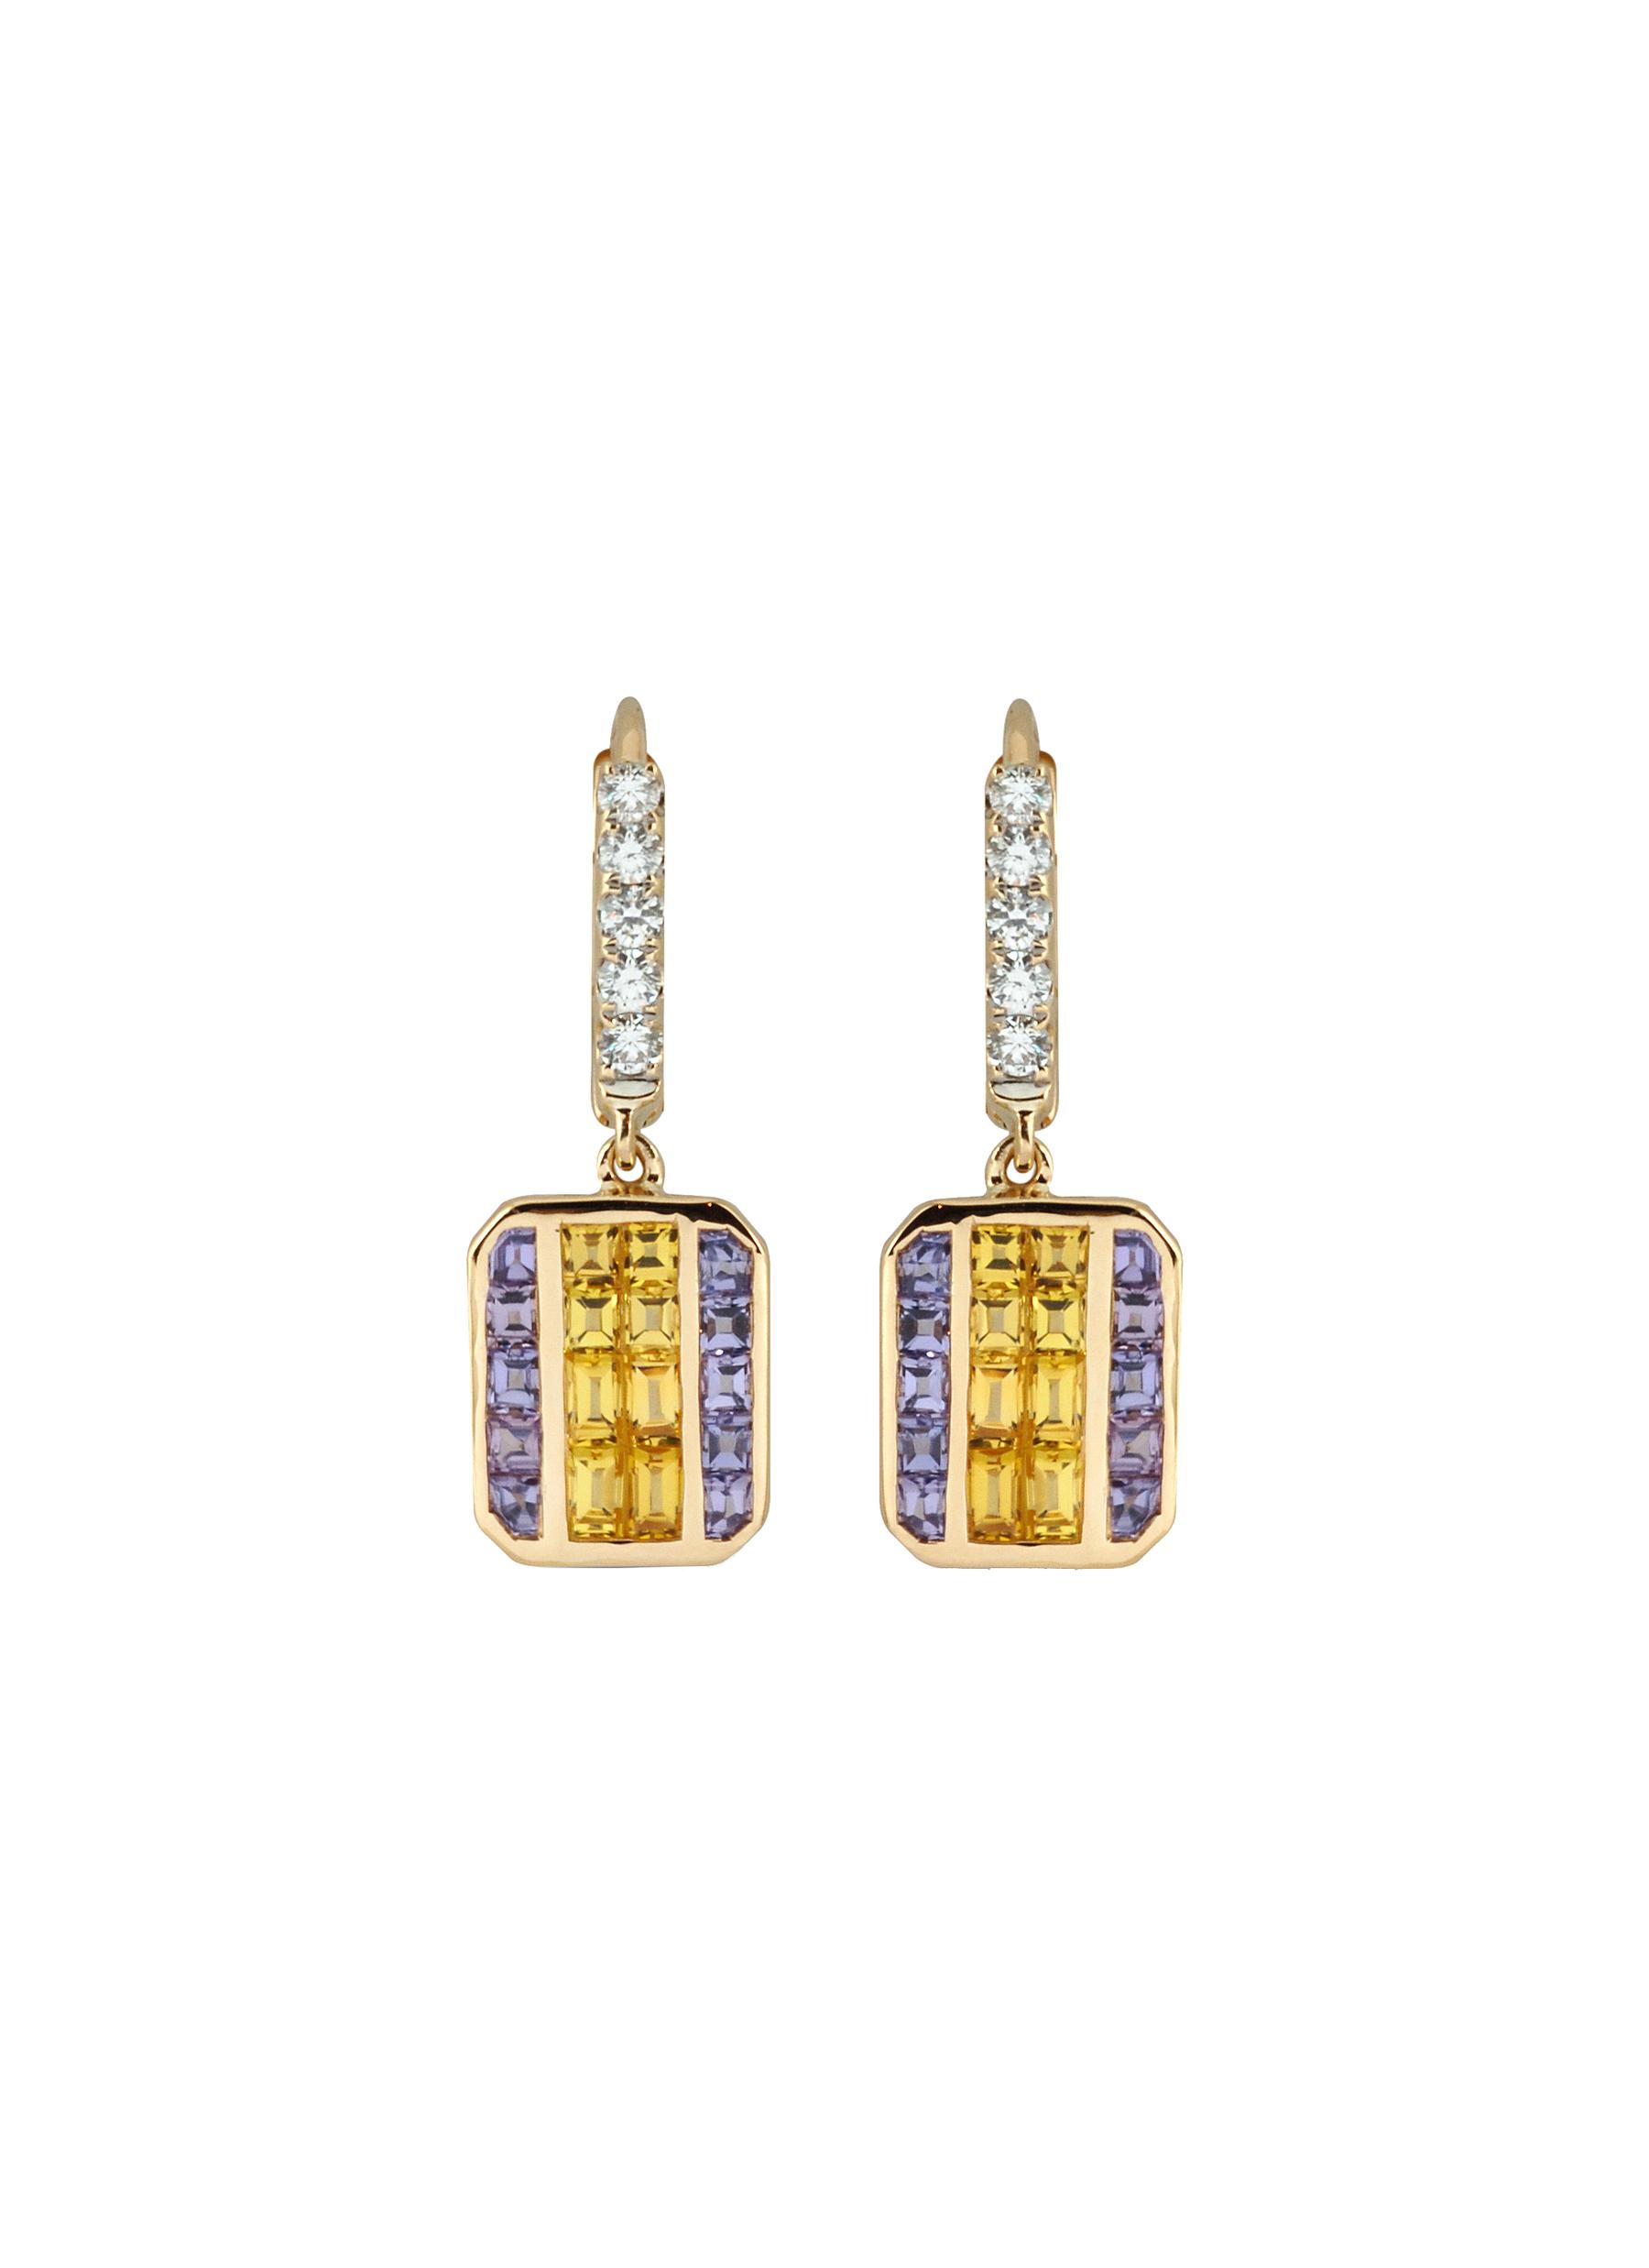 KAVANT & SHARART ‘GeoArt' Diamond Yellow And Purple Sapphire 18K Gold Drop Earrings